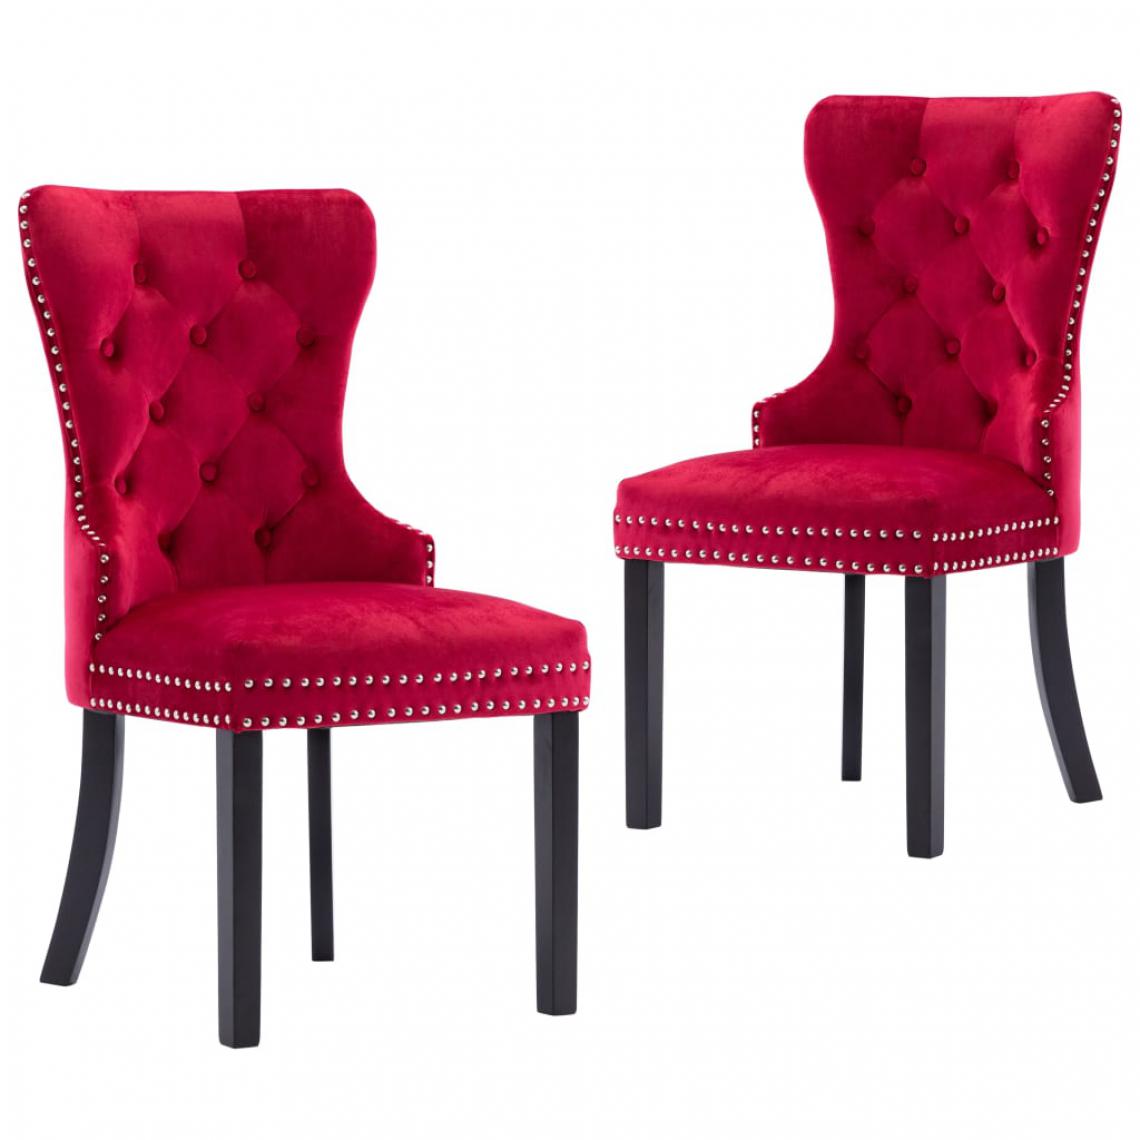 Chunhelife - Chaises de salle à manger 2 pcs Rouge bordeaux Velours - Chaises